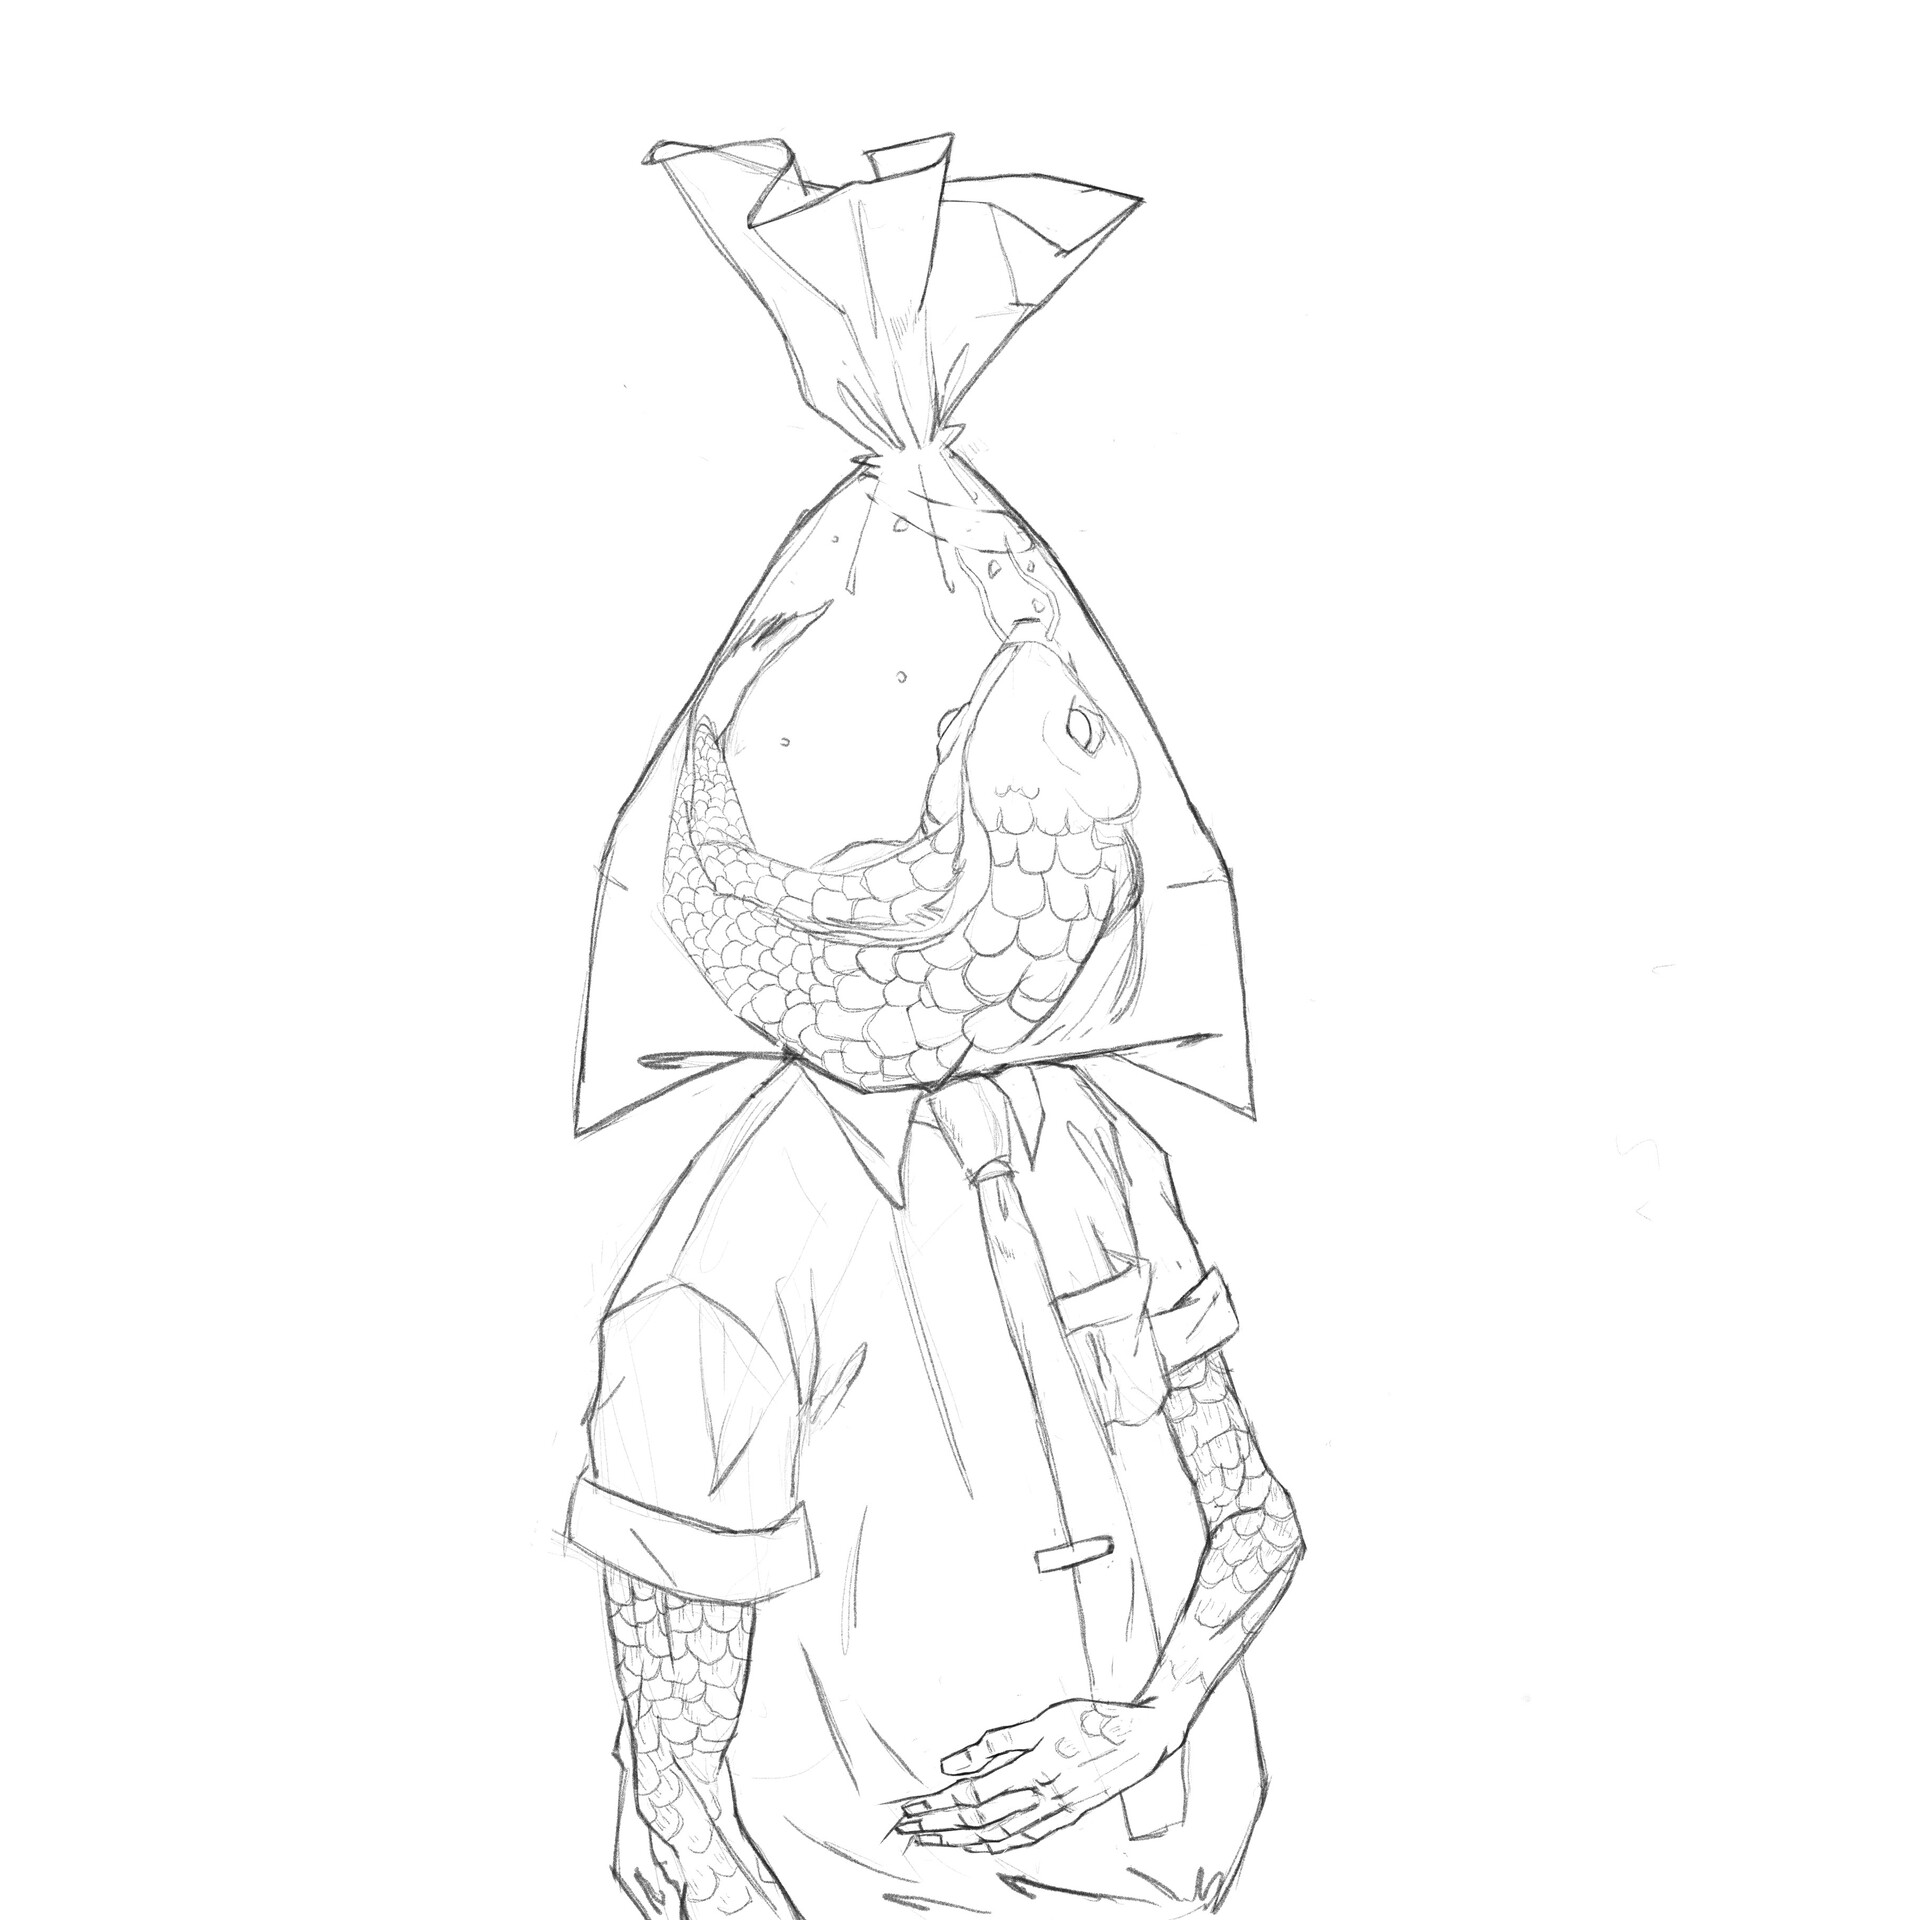 ArtStation - Fish bag head